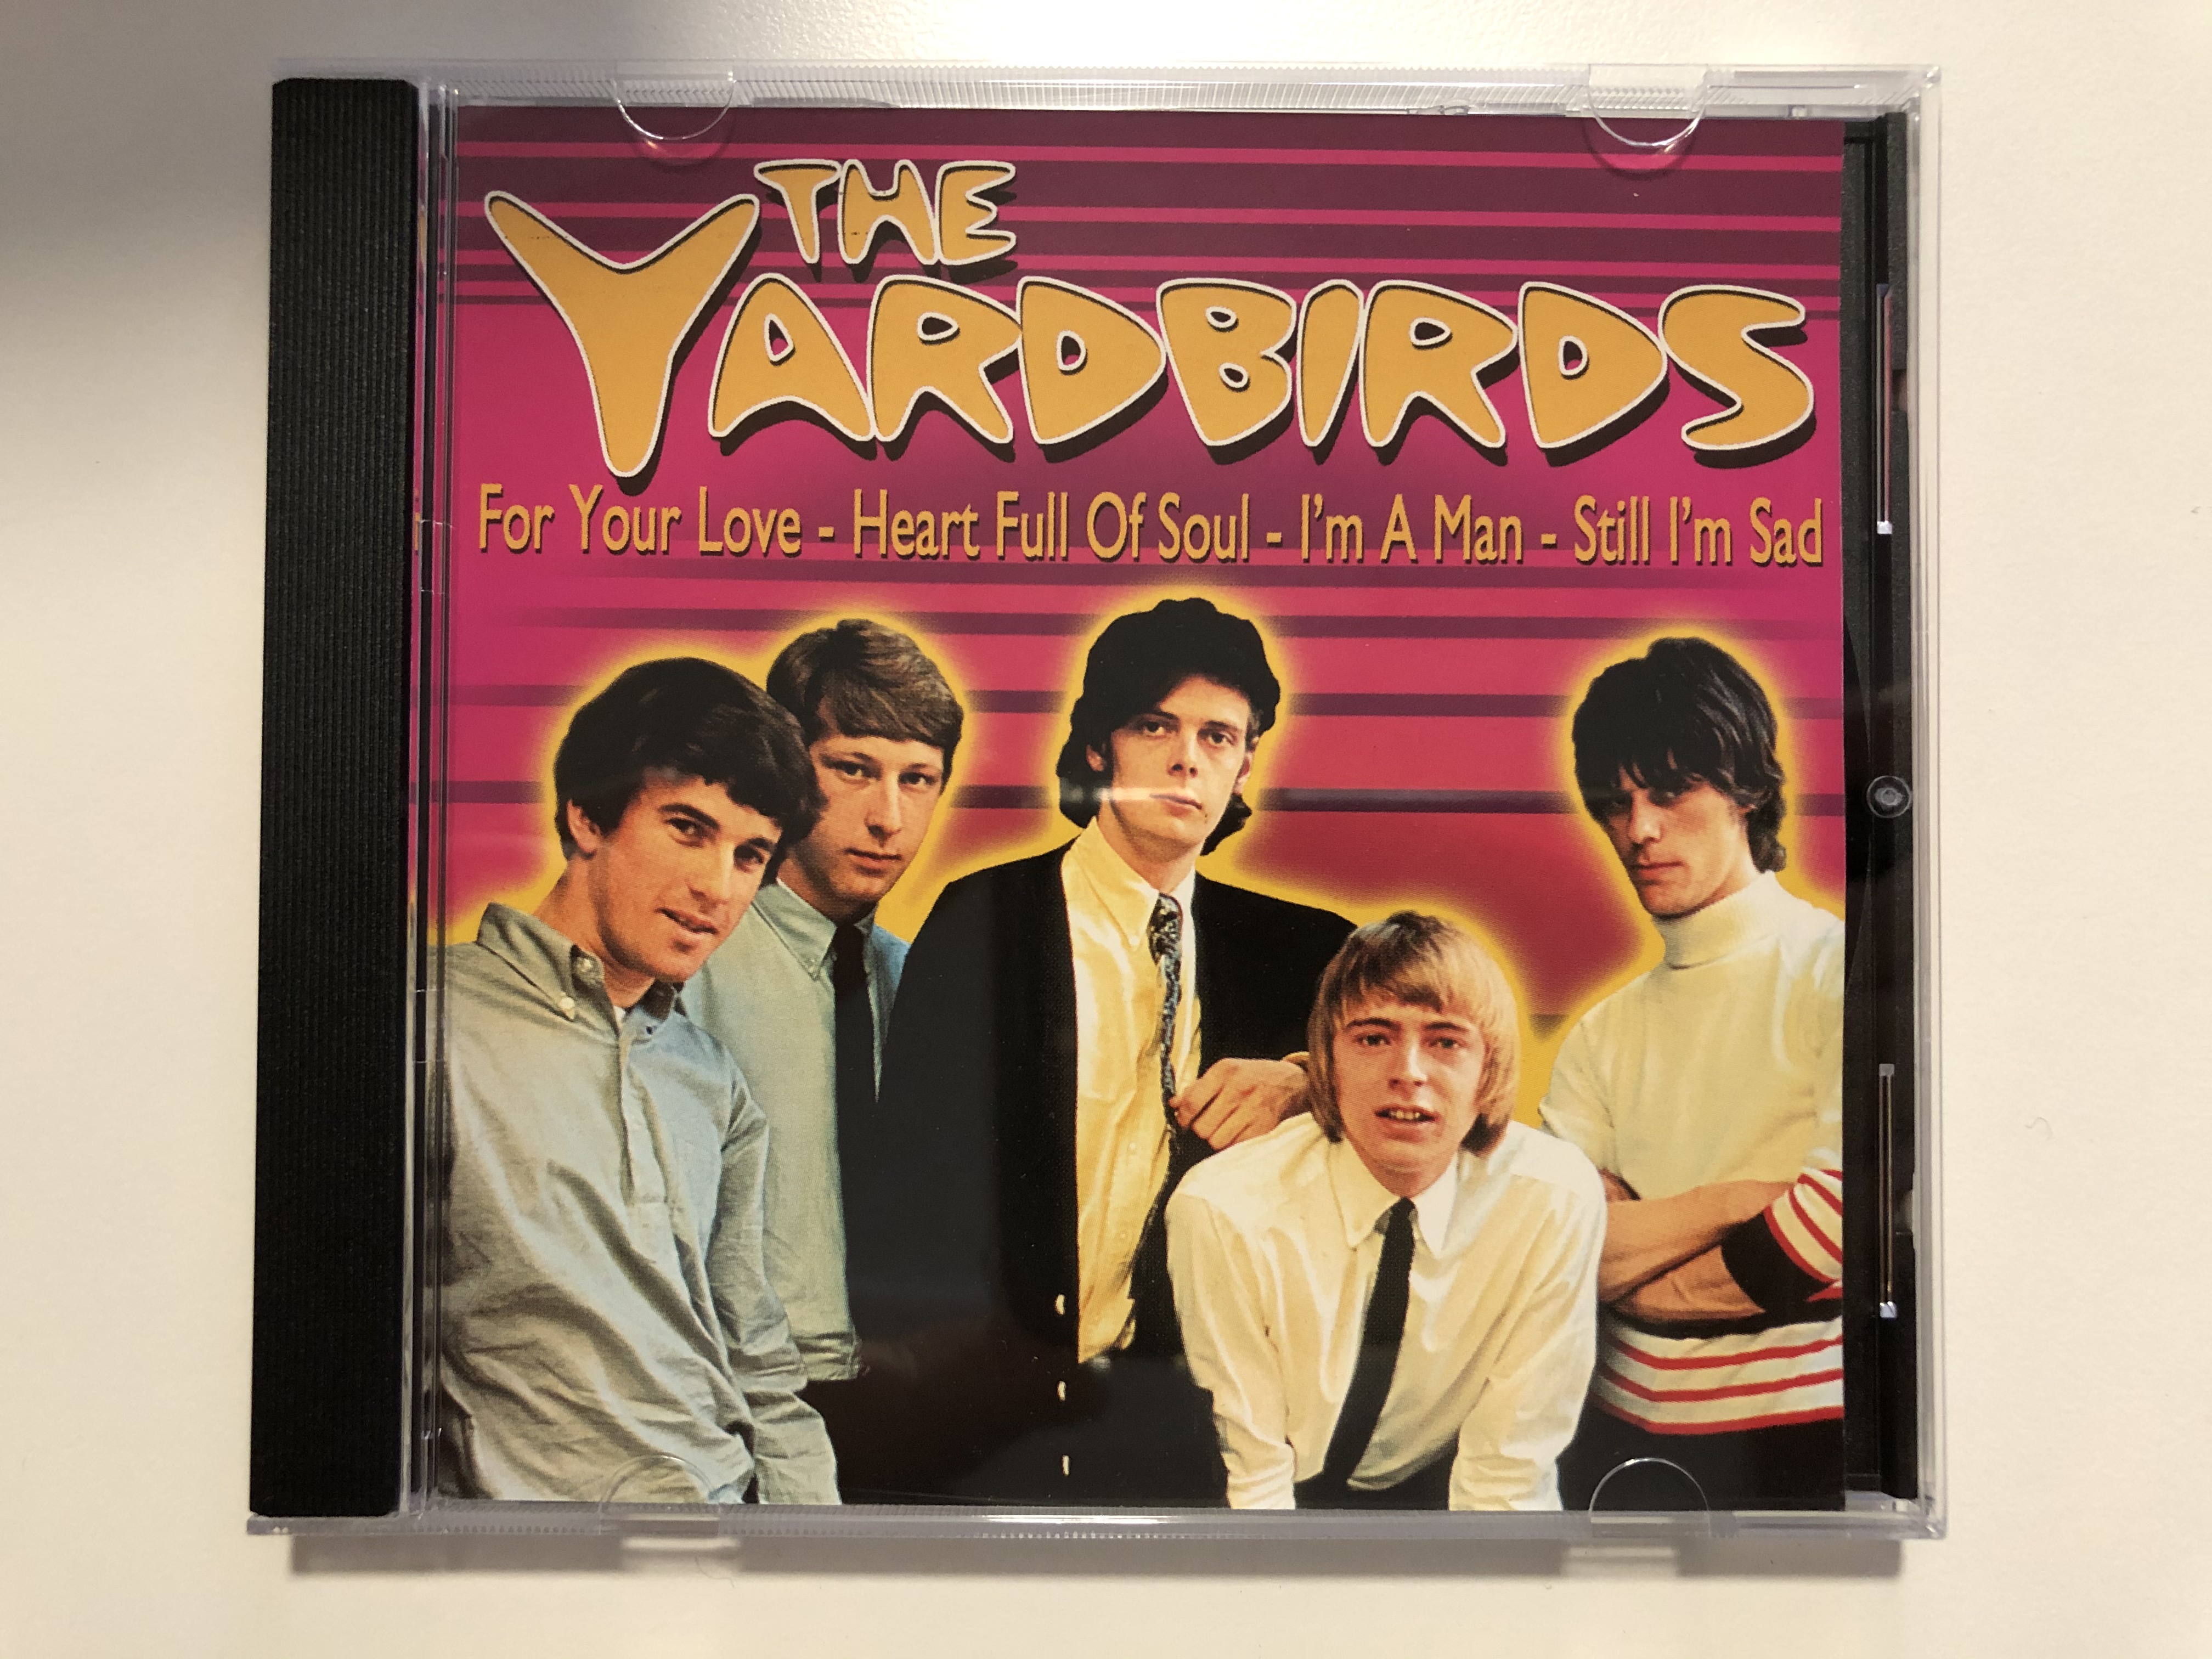 the-yardbirds-for-your-love-heart-full-of-soul-i-m-a-man-still-i-m-sad-forever-gold-audio-cd-2001-fg077-1-.jpg